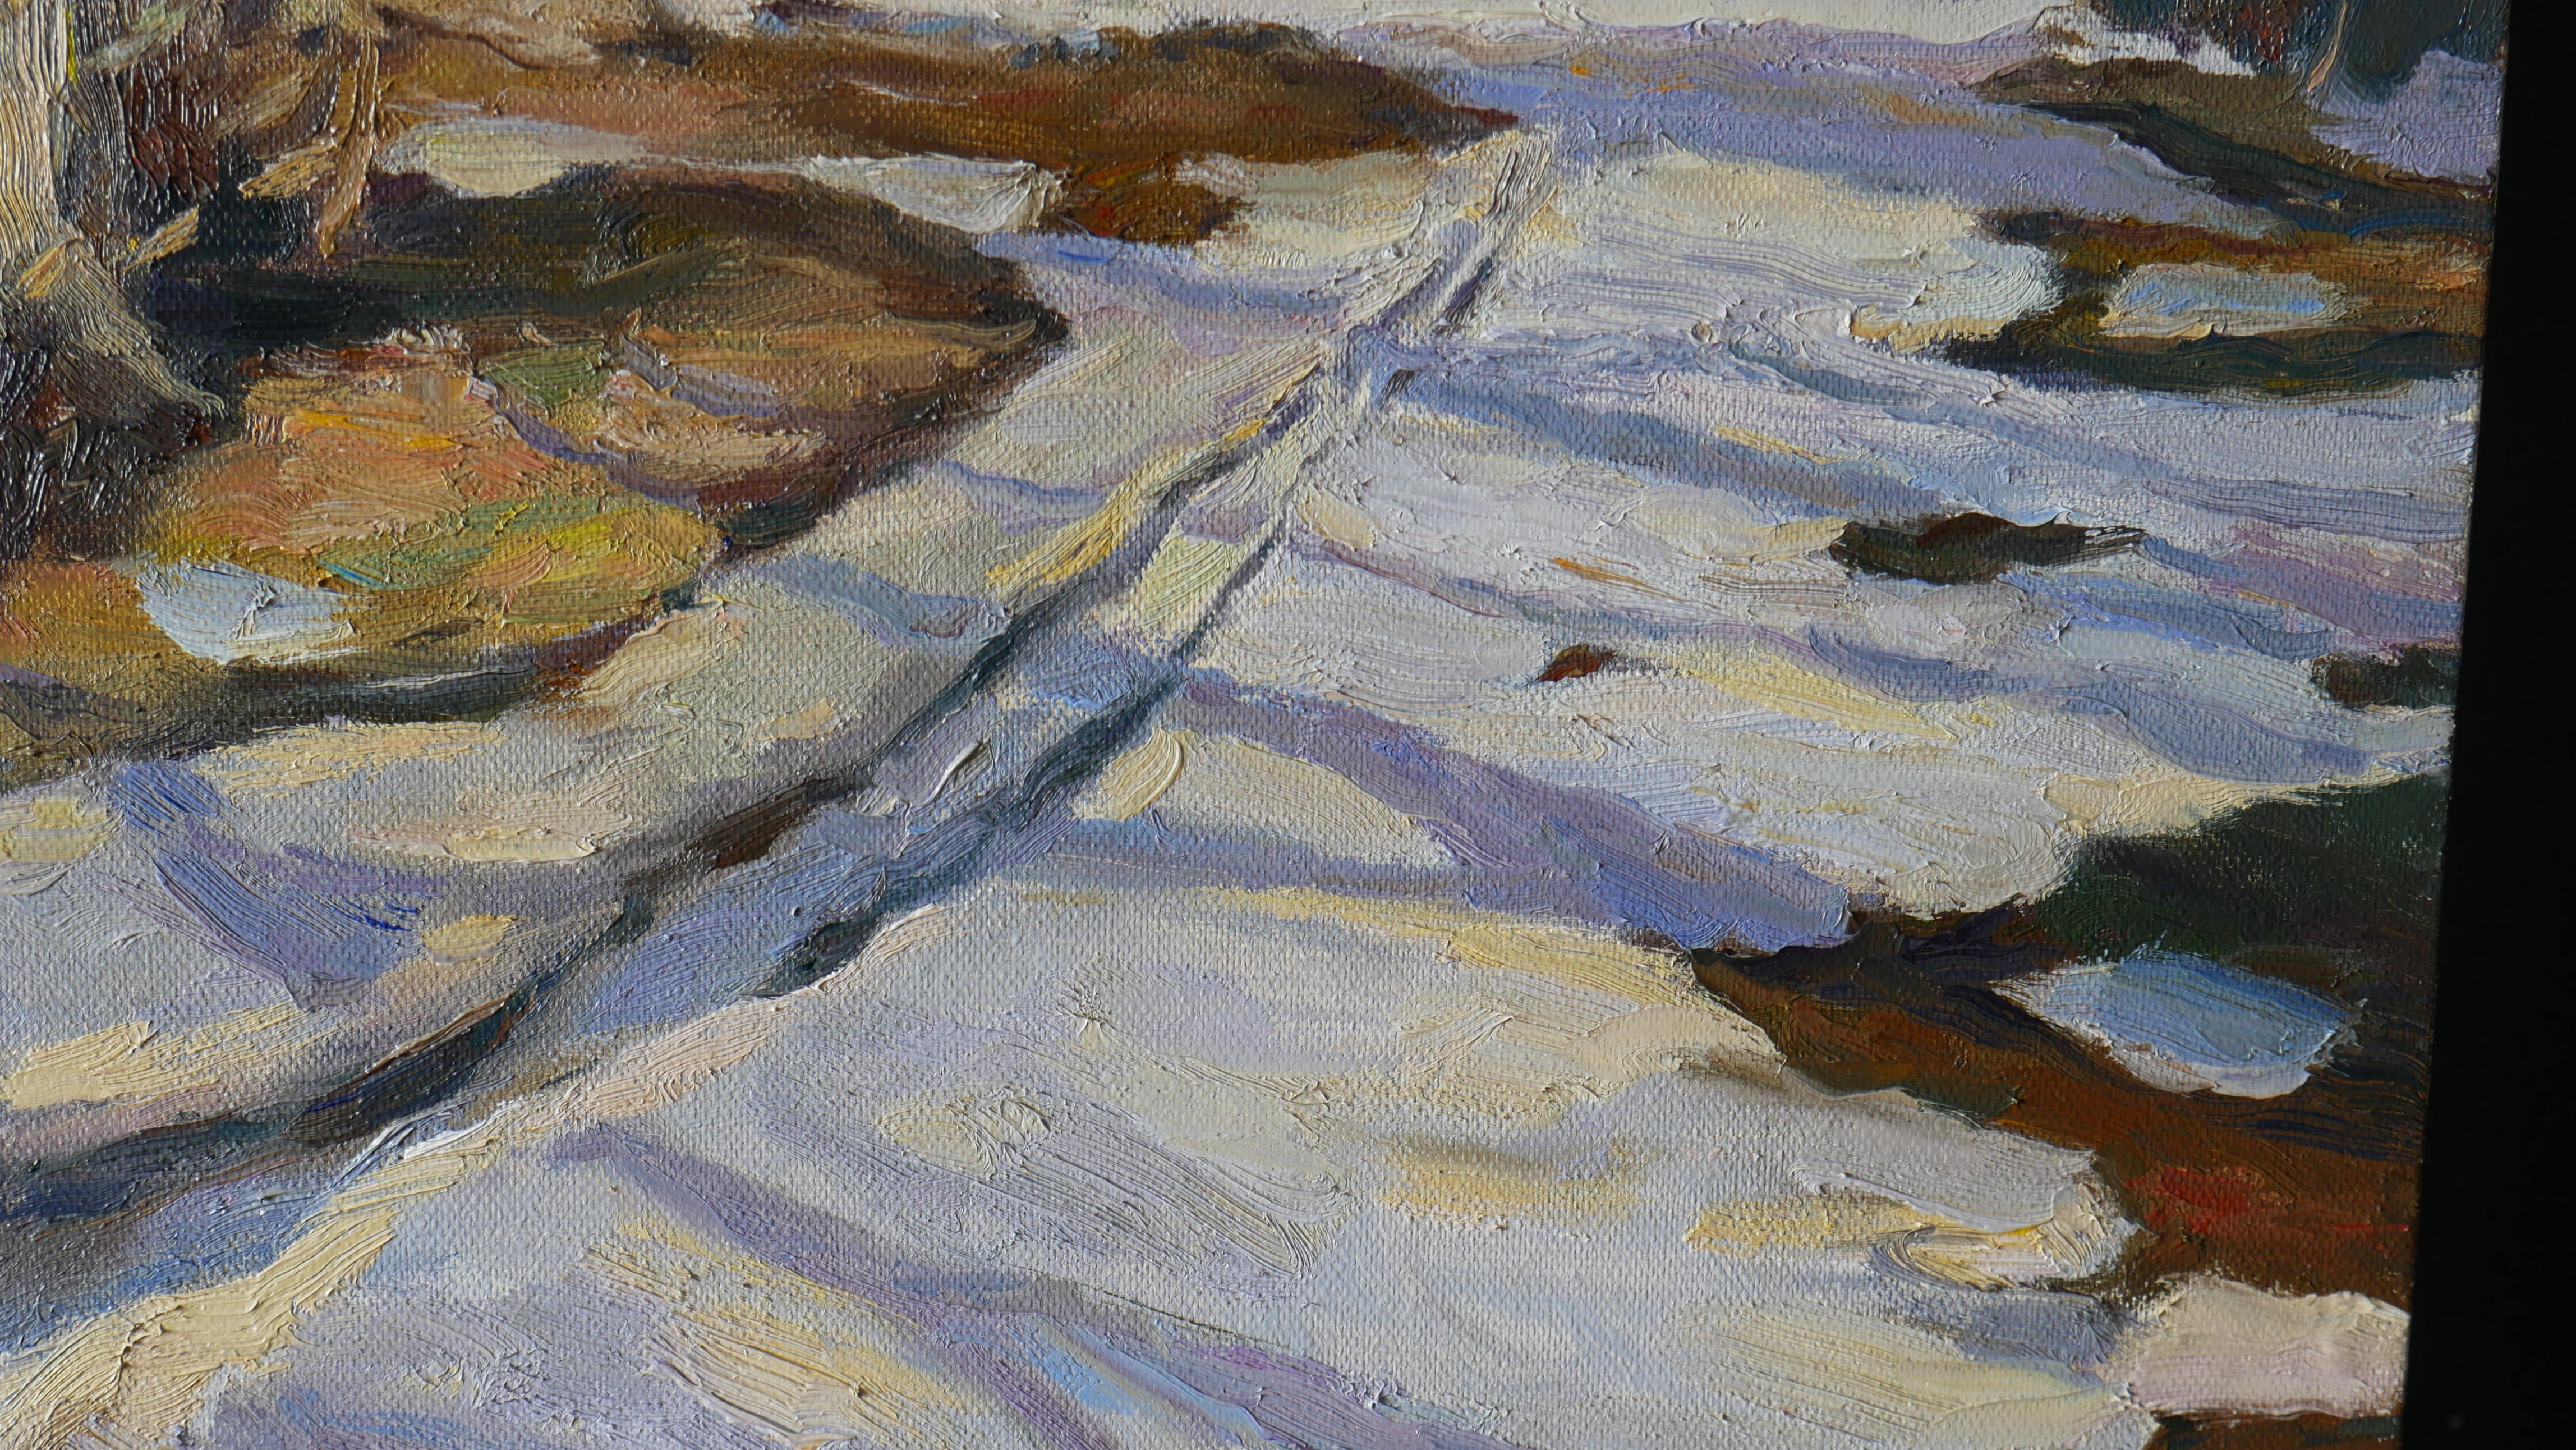 Ein impressionistisches, sonniges Gemälde mit Schnee, Abendsonne und violetten Schatten ist un plein air entstanden.
Die abendliche Frühlingssonne schafft unglaubliche Kombinationen von warmen und kalten Farben auf weißem Schnee. Die Natur erwacht